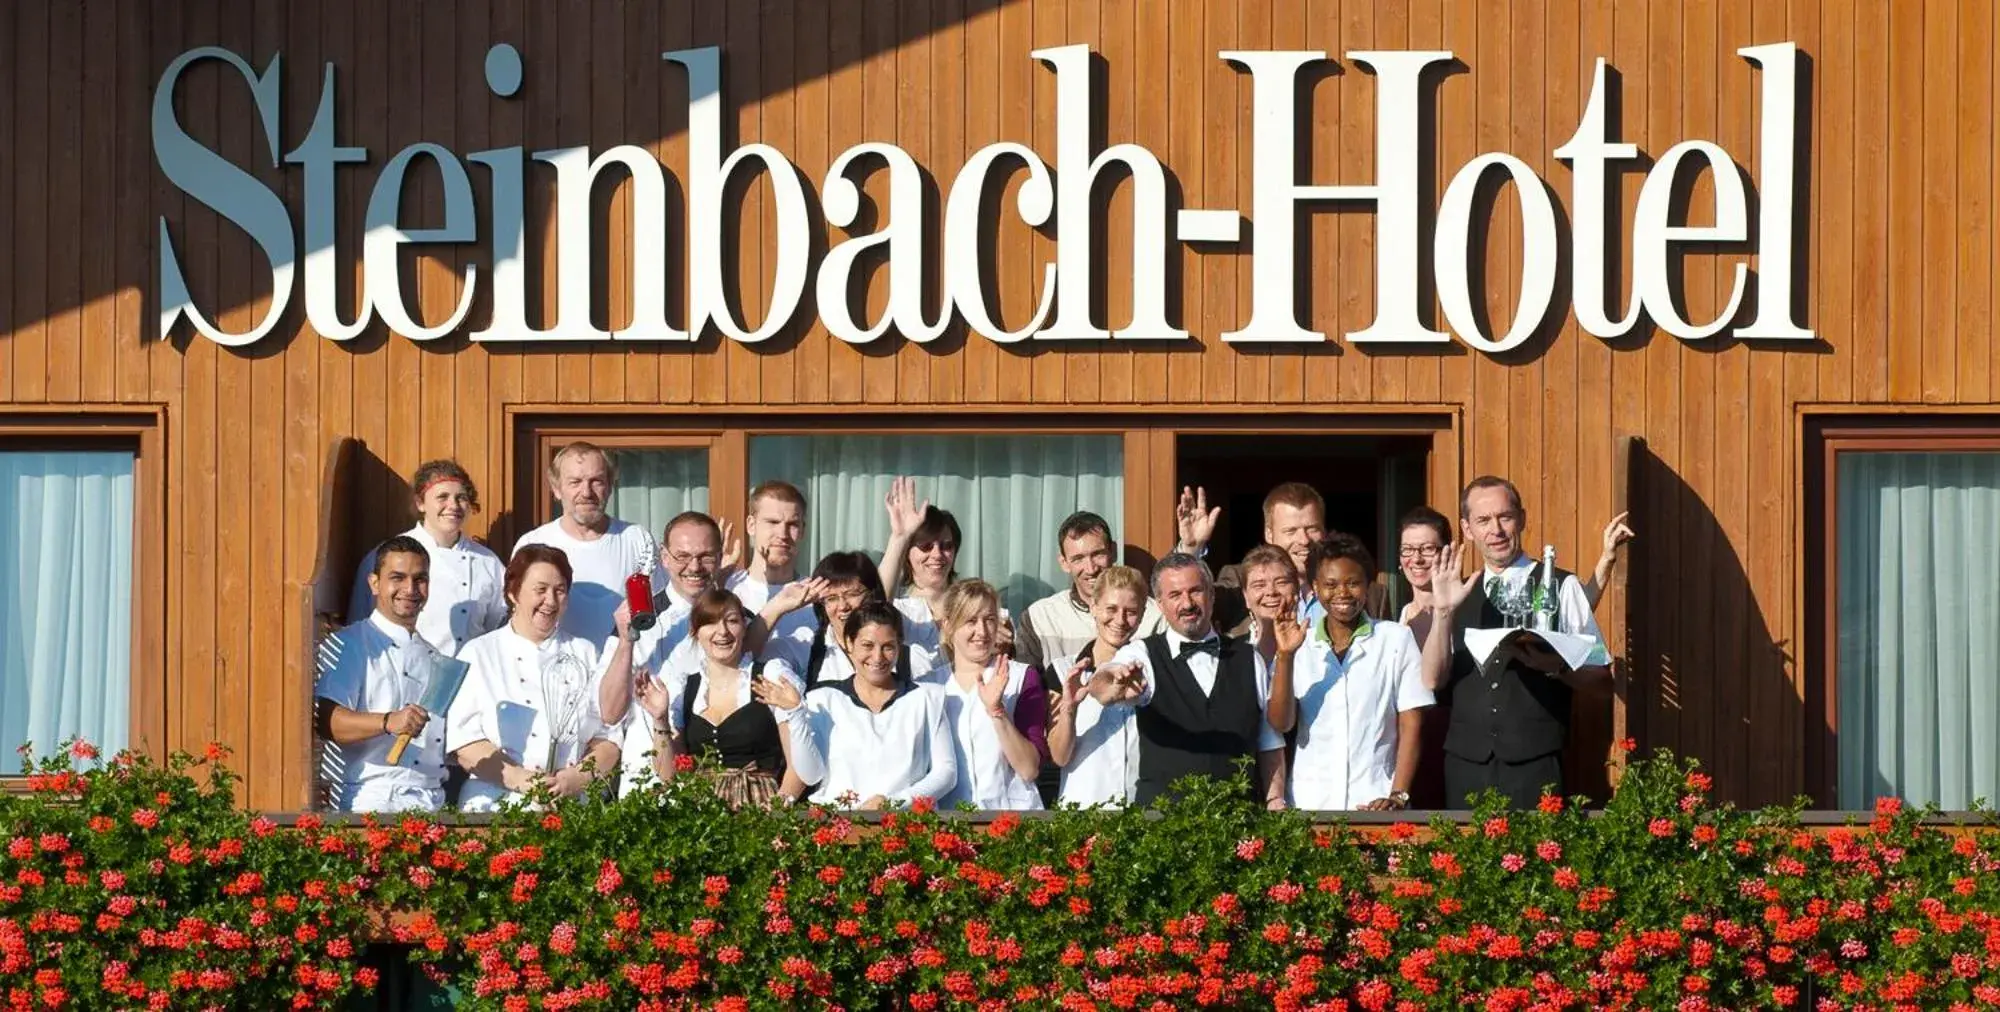 Staff in Steinbach-Hotel